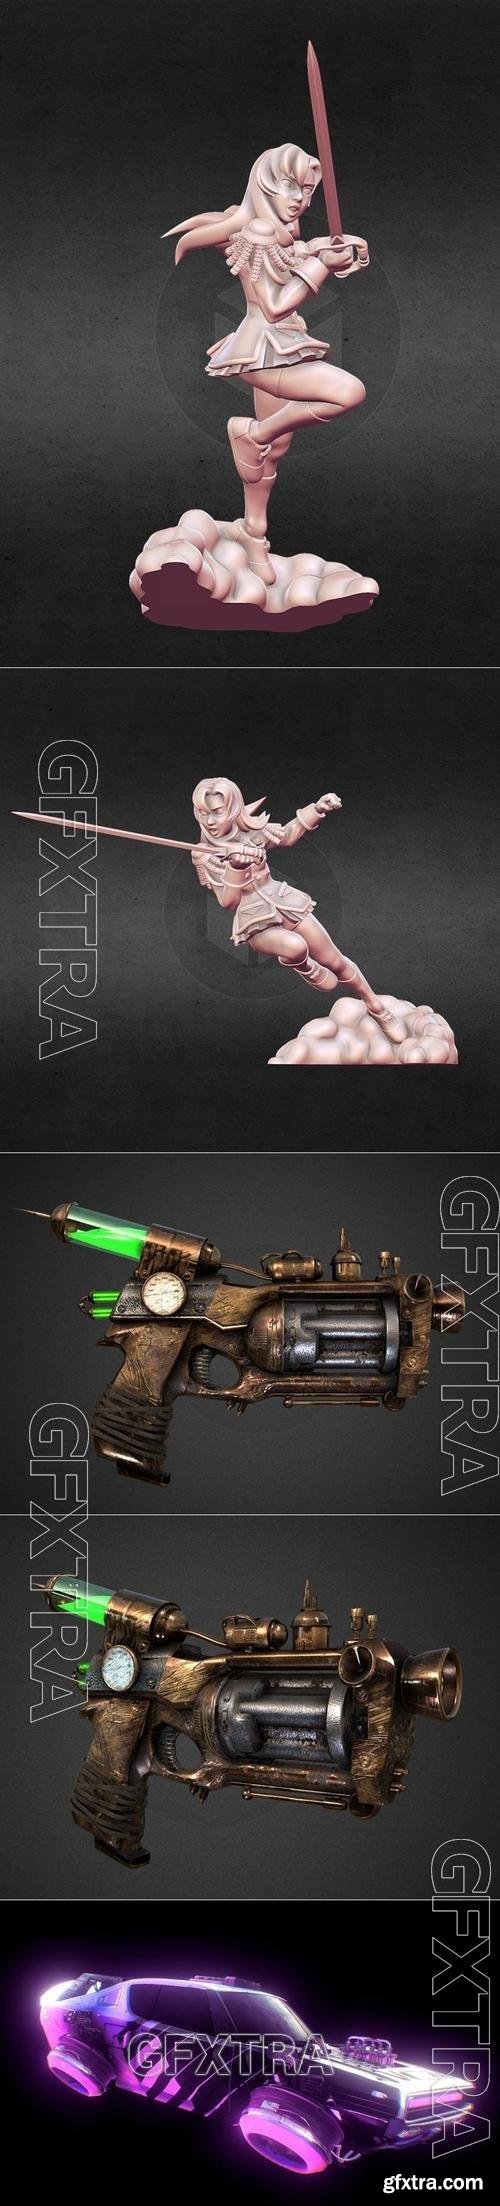 Revolutionary Girl Utena and Pistola Steampunk ii Gun and Retro Futuristic Car 3D